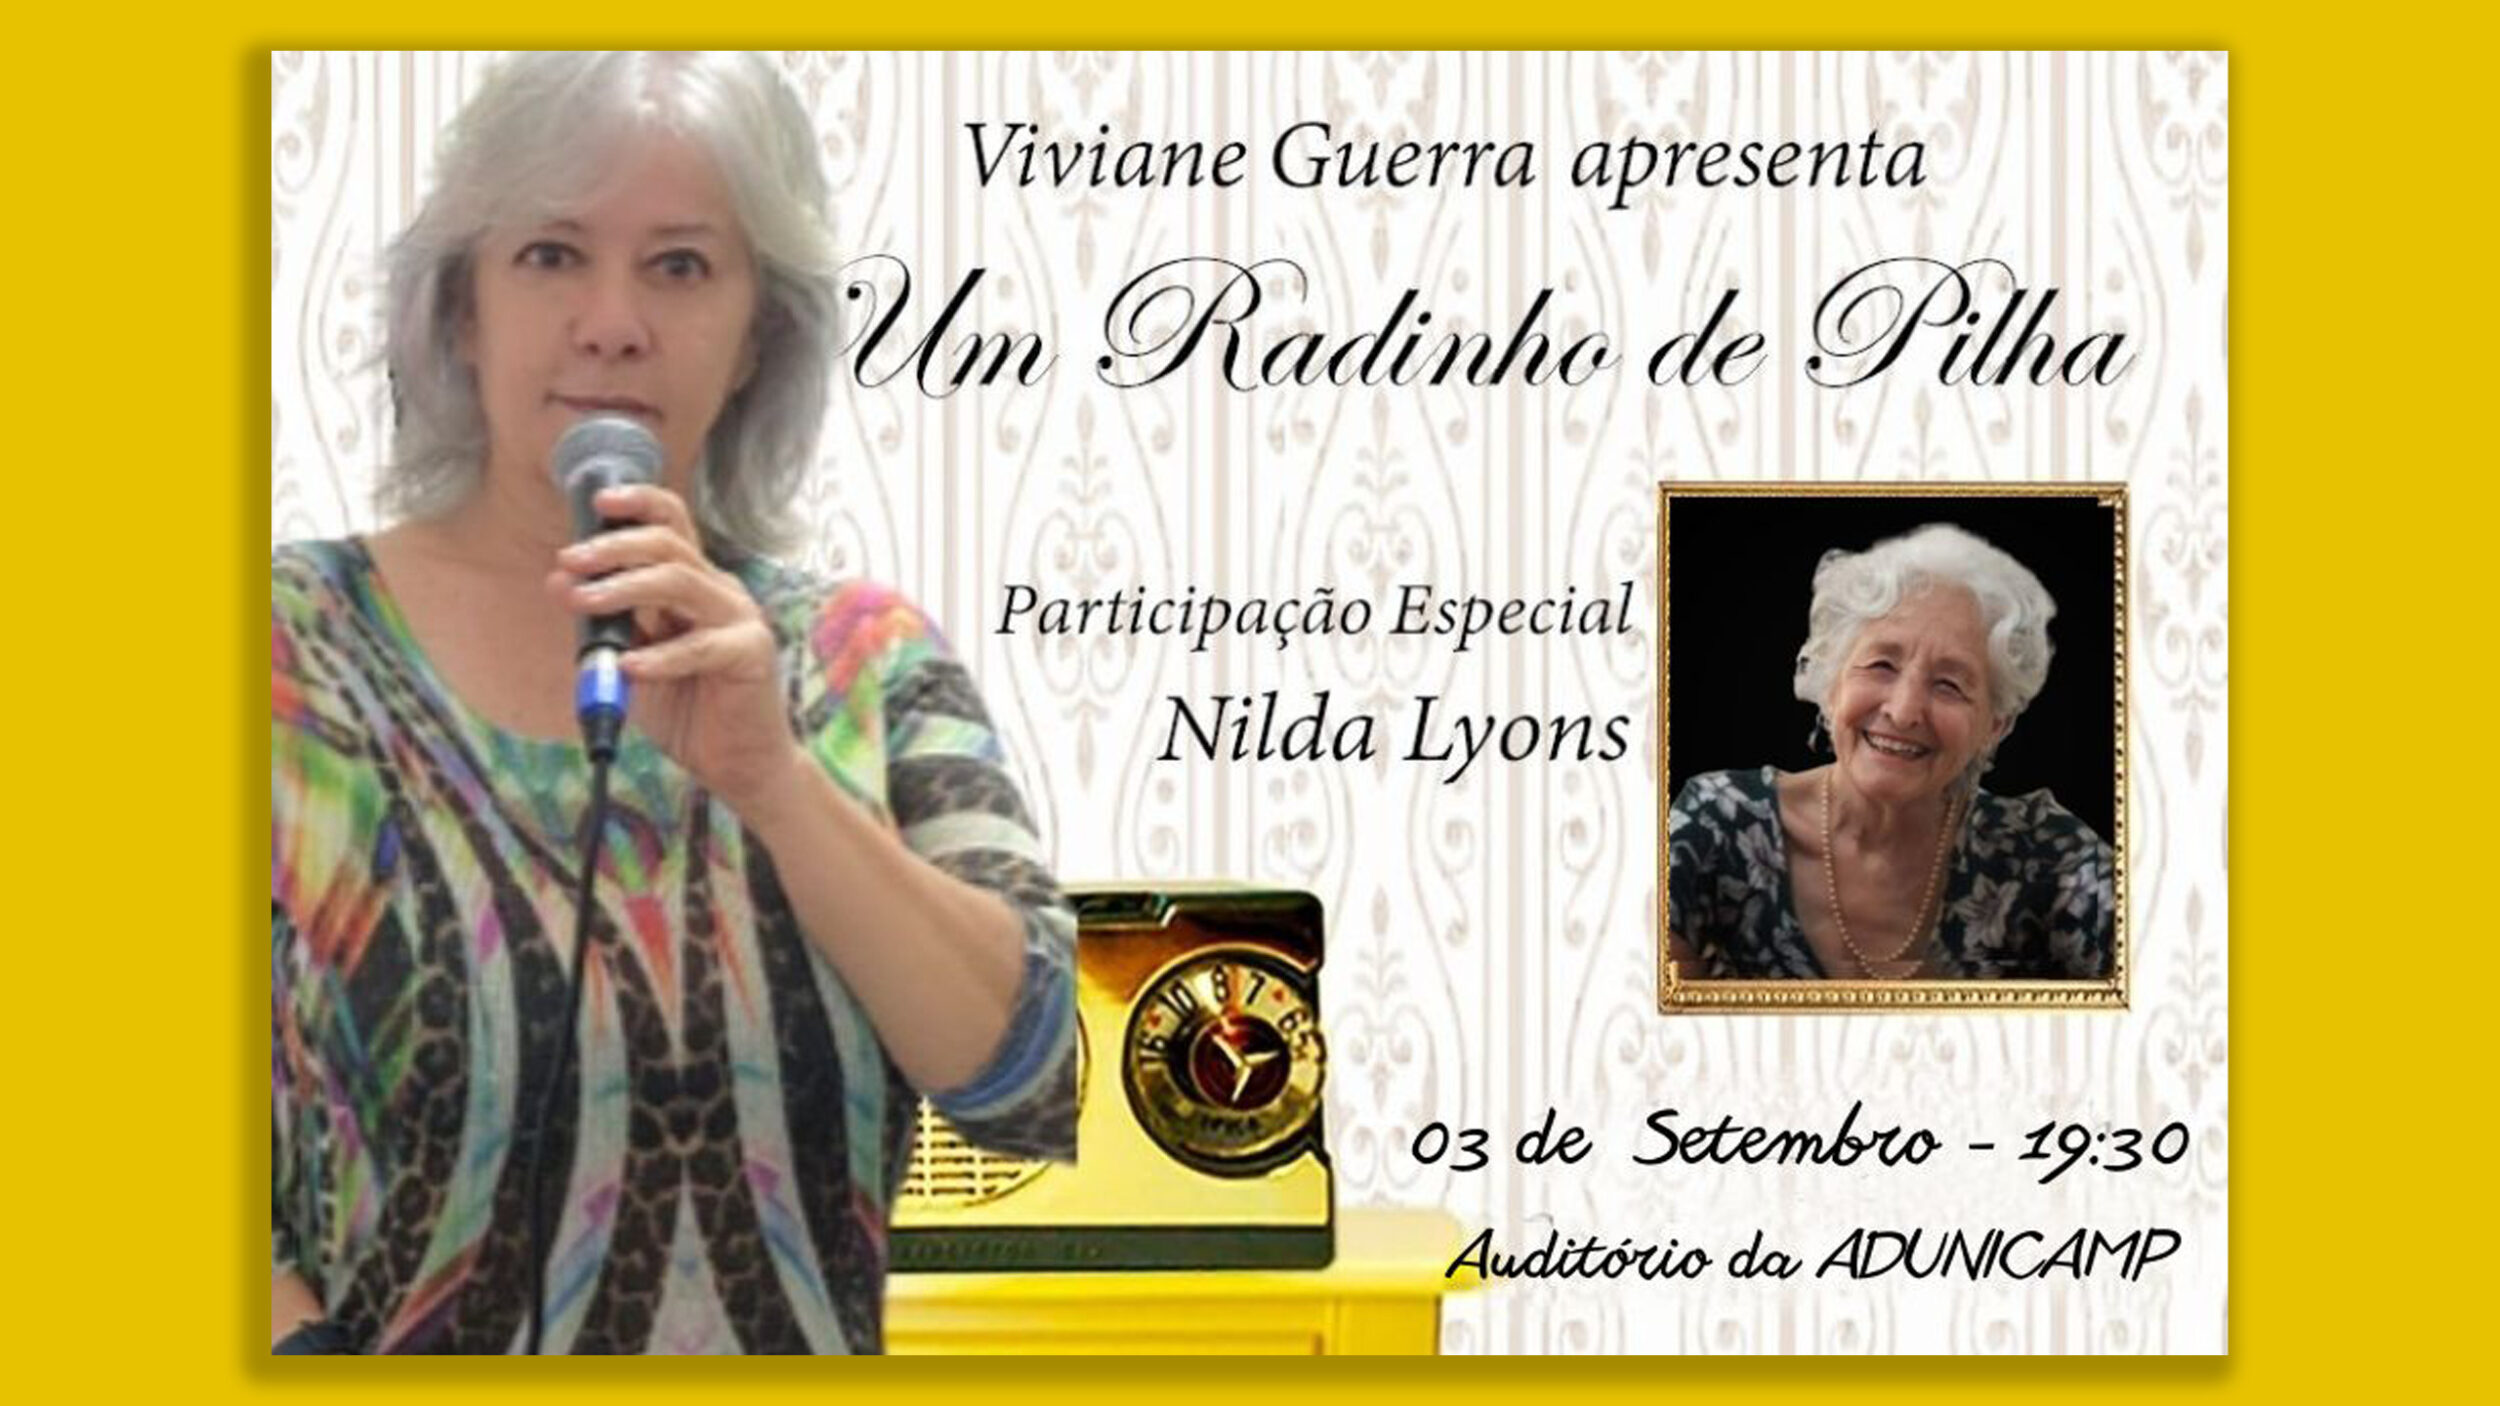 show viviane guerra home — ADunicamp recebe a cantora Viviane Guerra, com o show “Um Radinho de Pilha” — ADunicamp